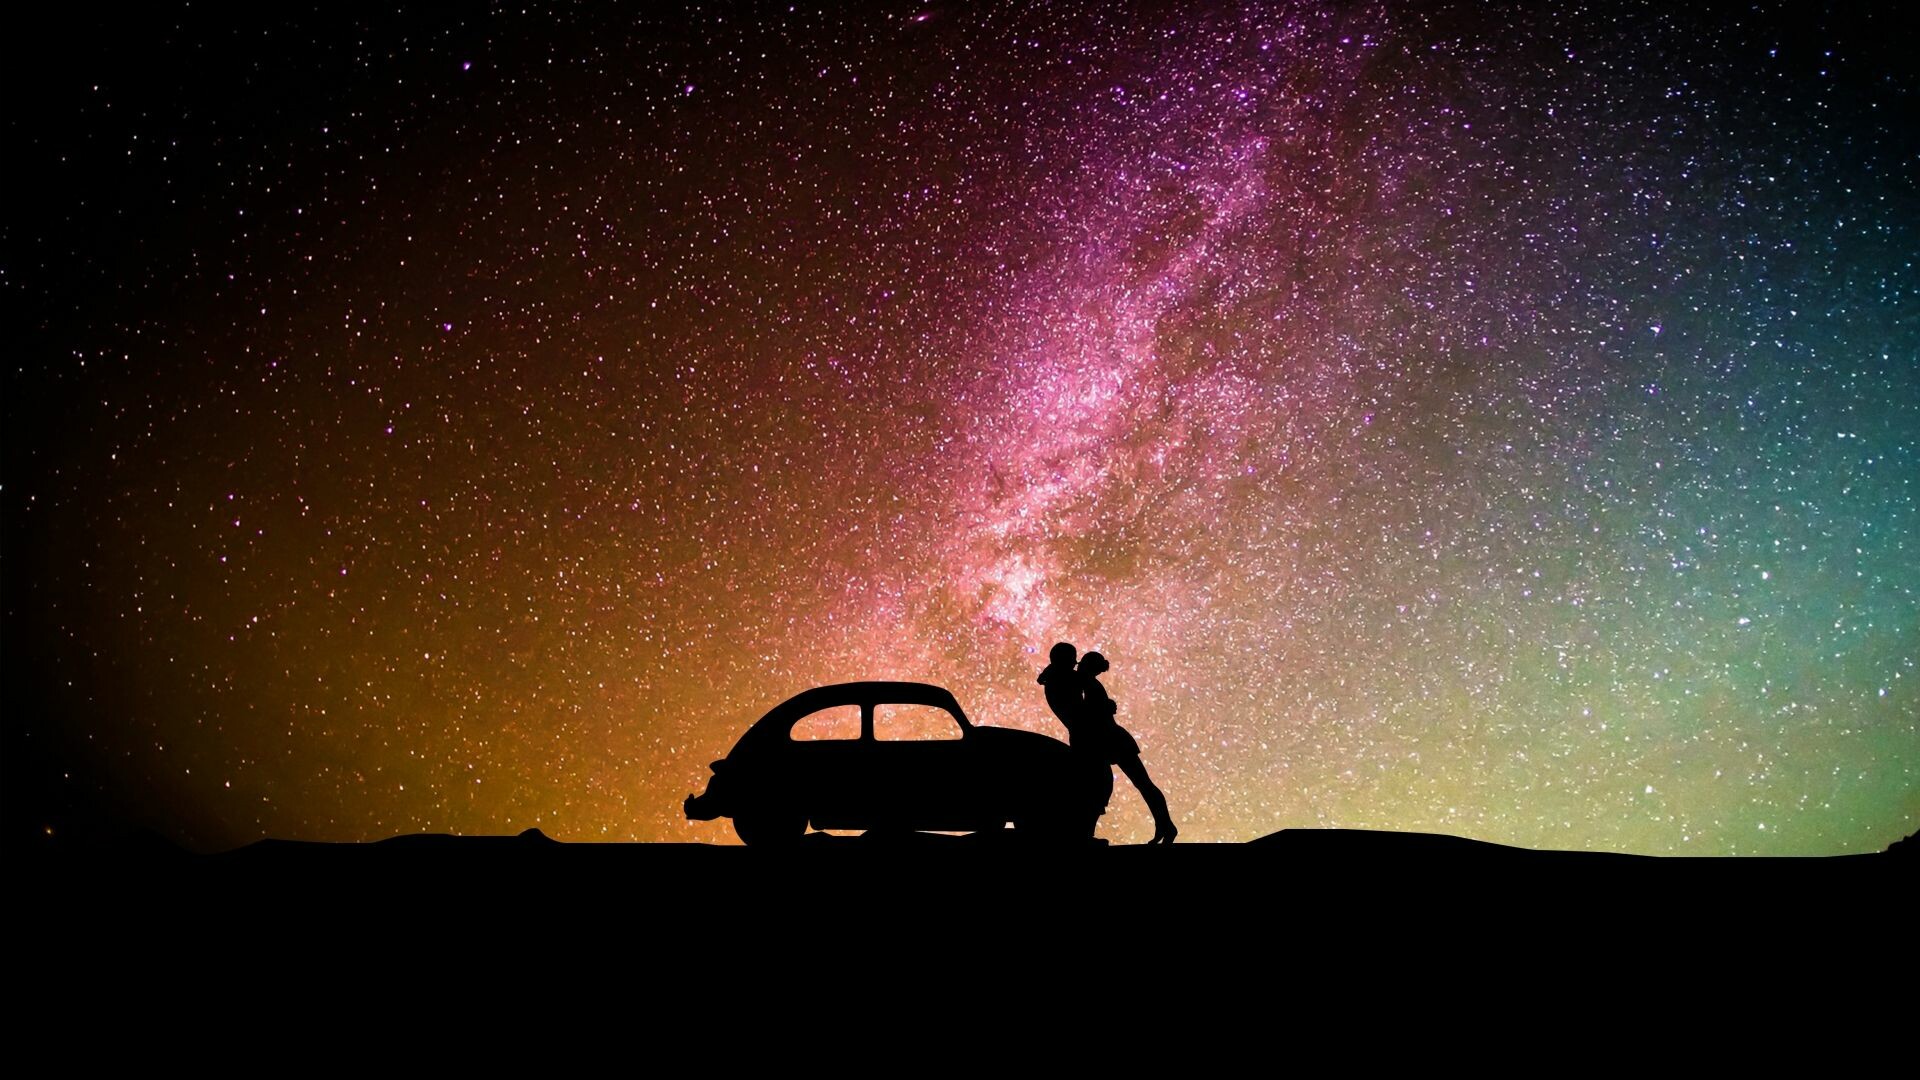 Silhouette car hug, Milky way in the background, Cosmic love, Romantic atmosphere, 1920x1080 Full HD Desktop